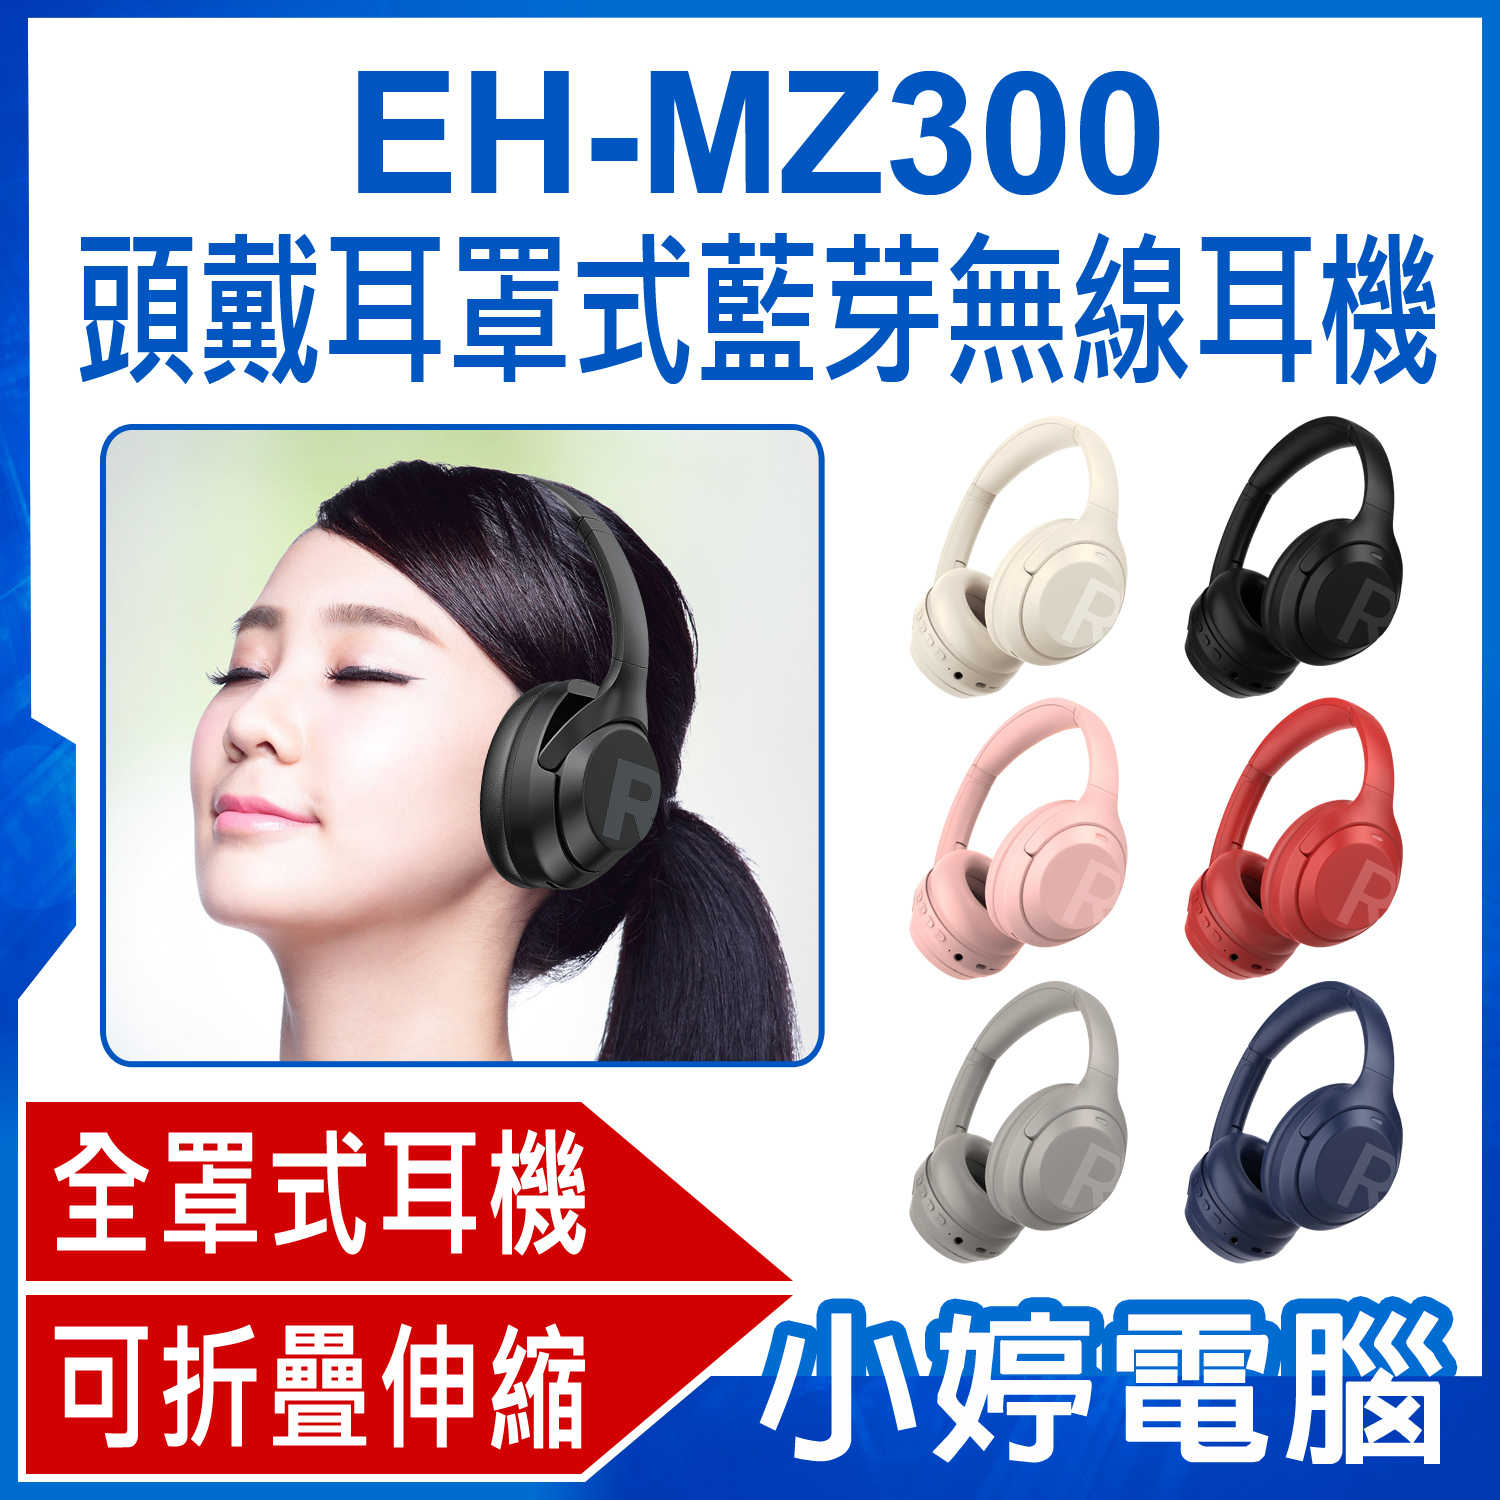 【小婷電腦】EH-MZ300 頭戴耳罩式藍芽無線耳機 重低音全罩式降噪耳機 頭戴式耳機 立體聲無線運動耳麥 超長待機